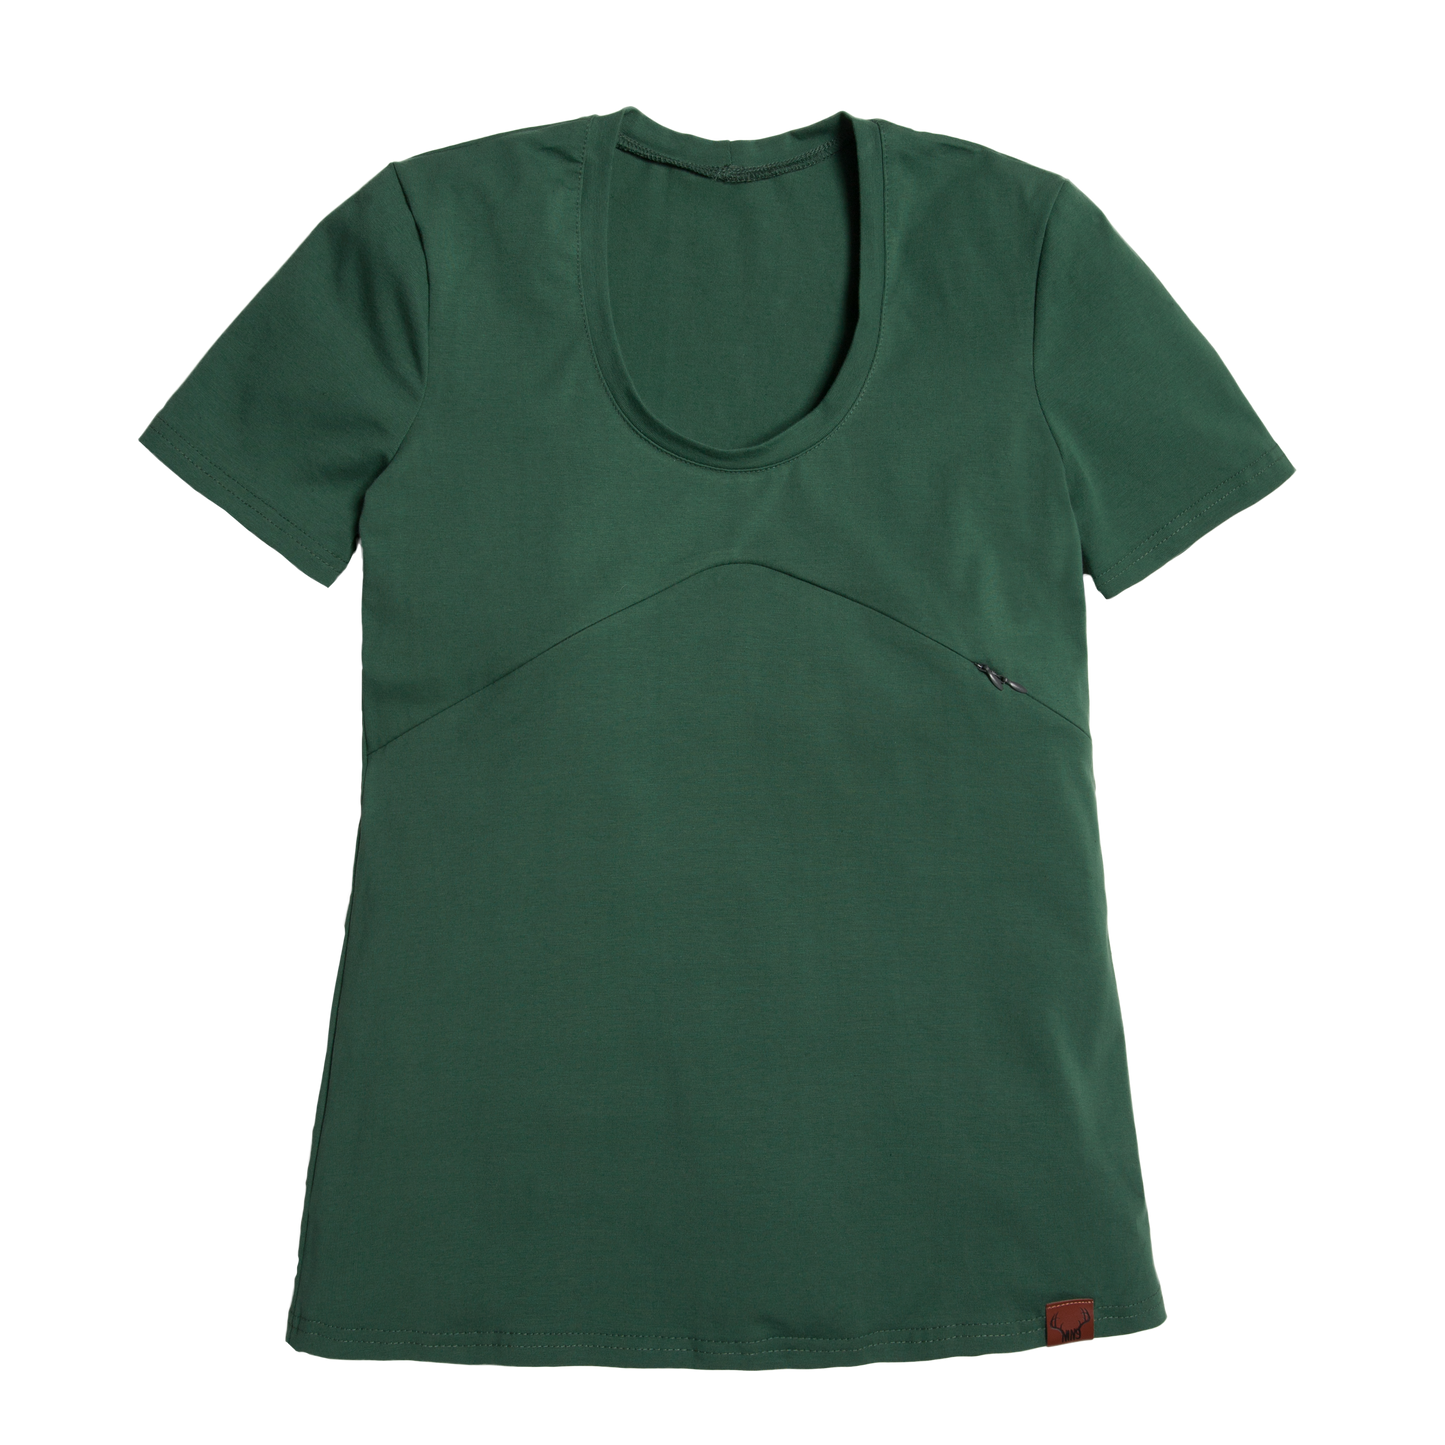 SMALL - VERT CACTUS t-shirt 3 en 1 maternité, allaitement, postpartum - Léger défaut ( réf #372 )